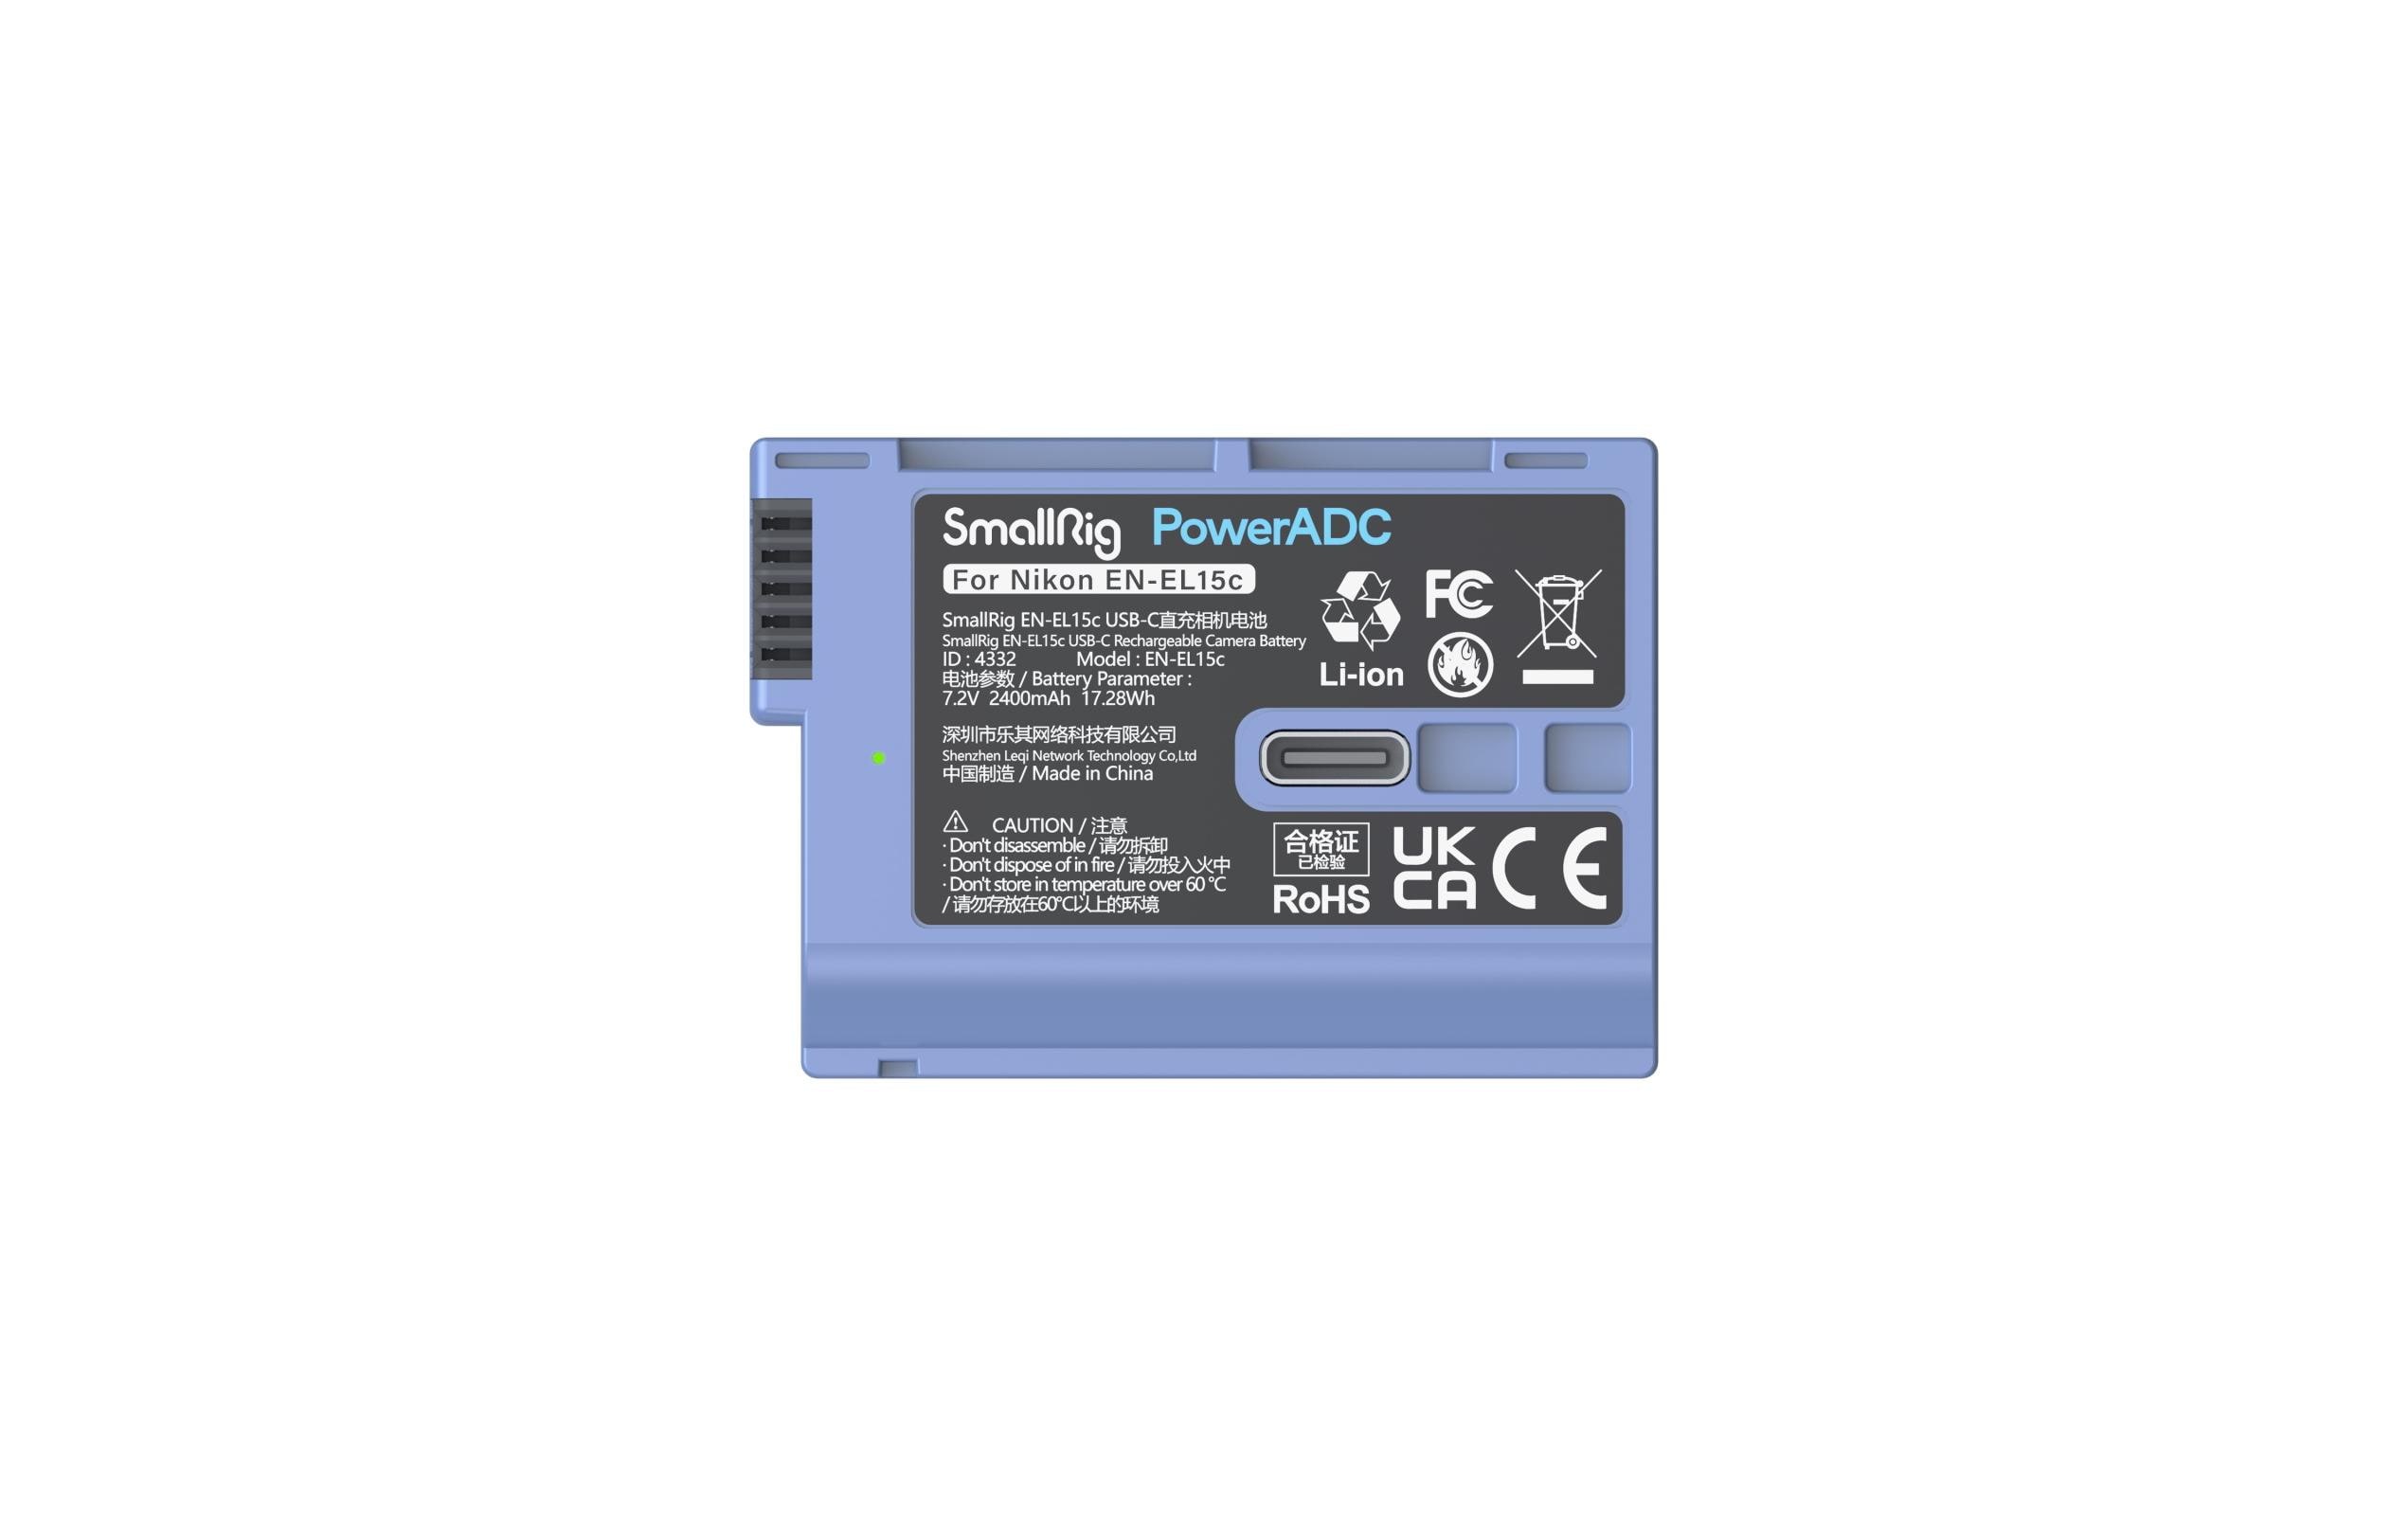 Smallrig Digitalkamera-Akku EN-EL15c USB-C